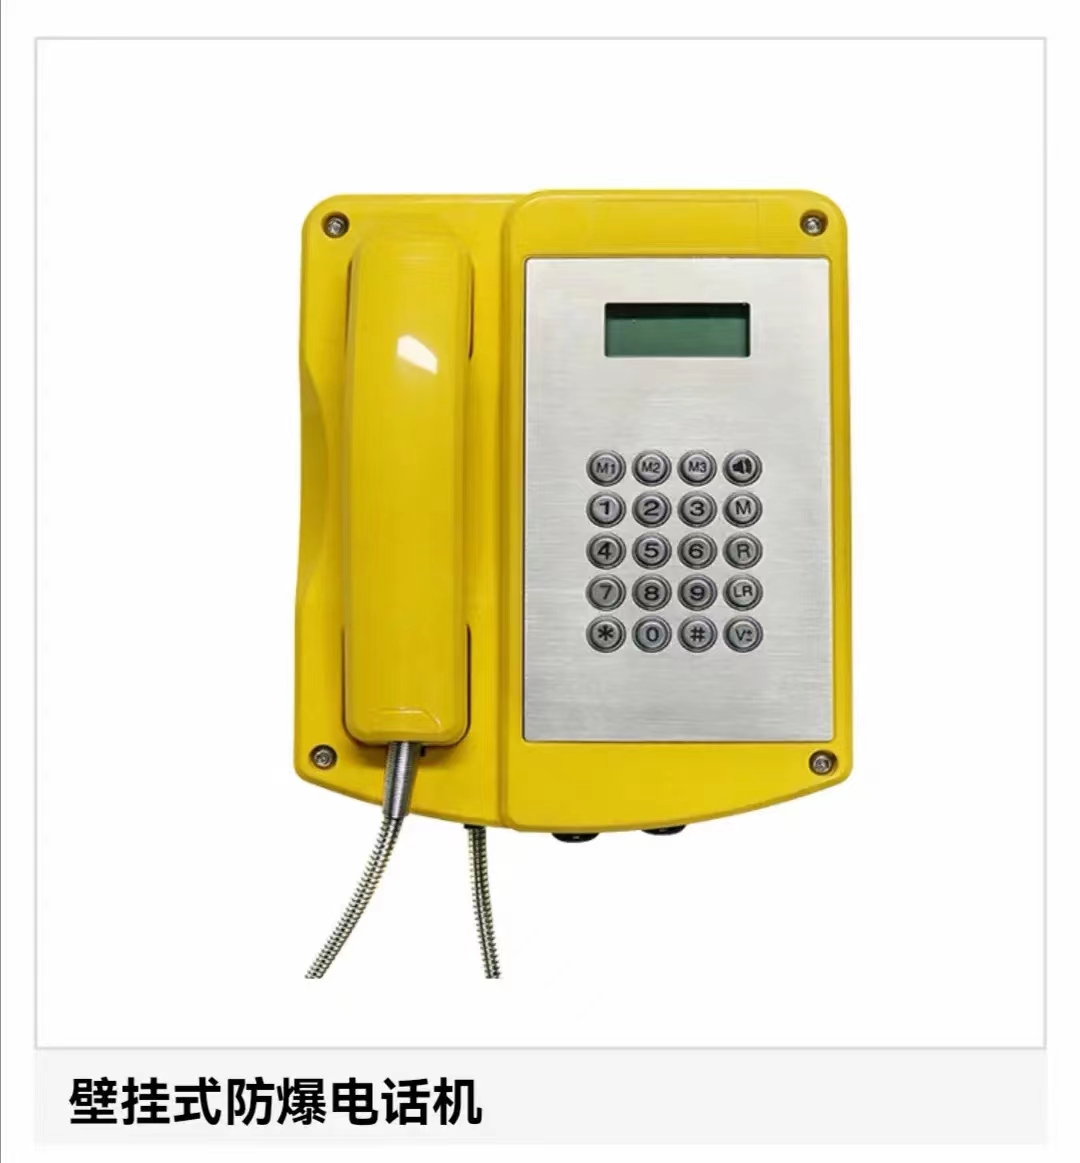 矿用VOIP电话机，IP67防水防尘等级，壁挂式工业电话